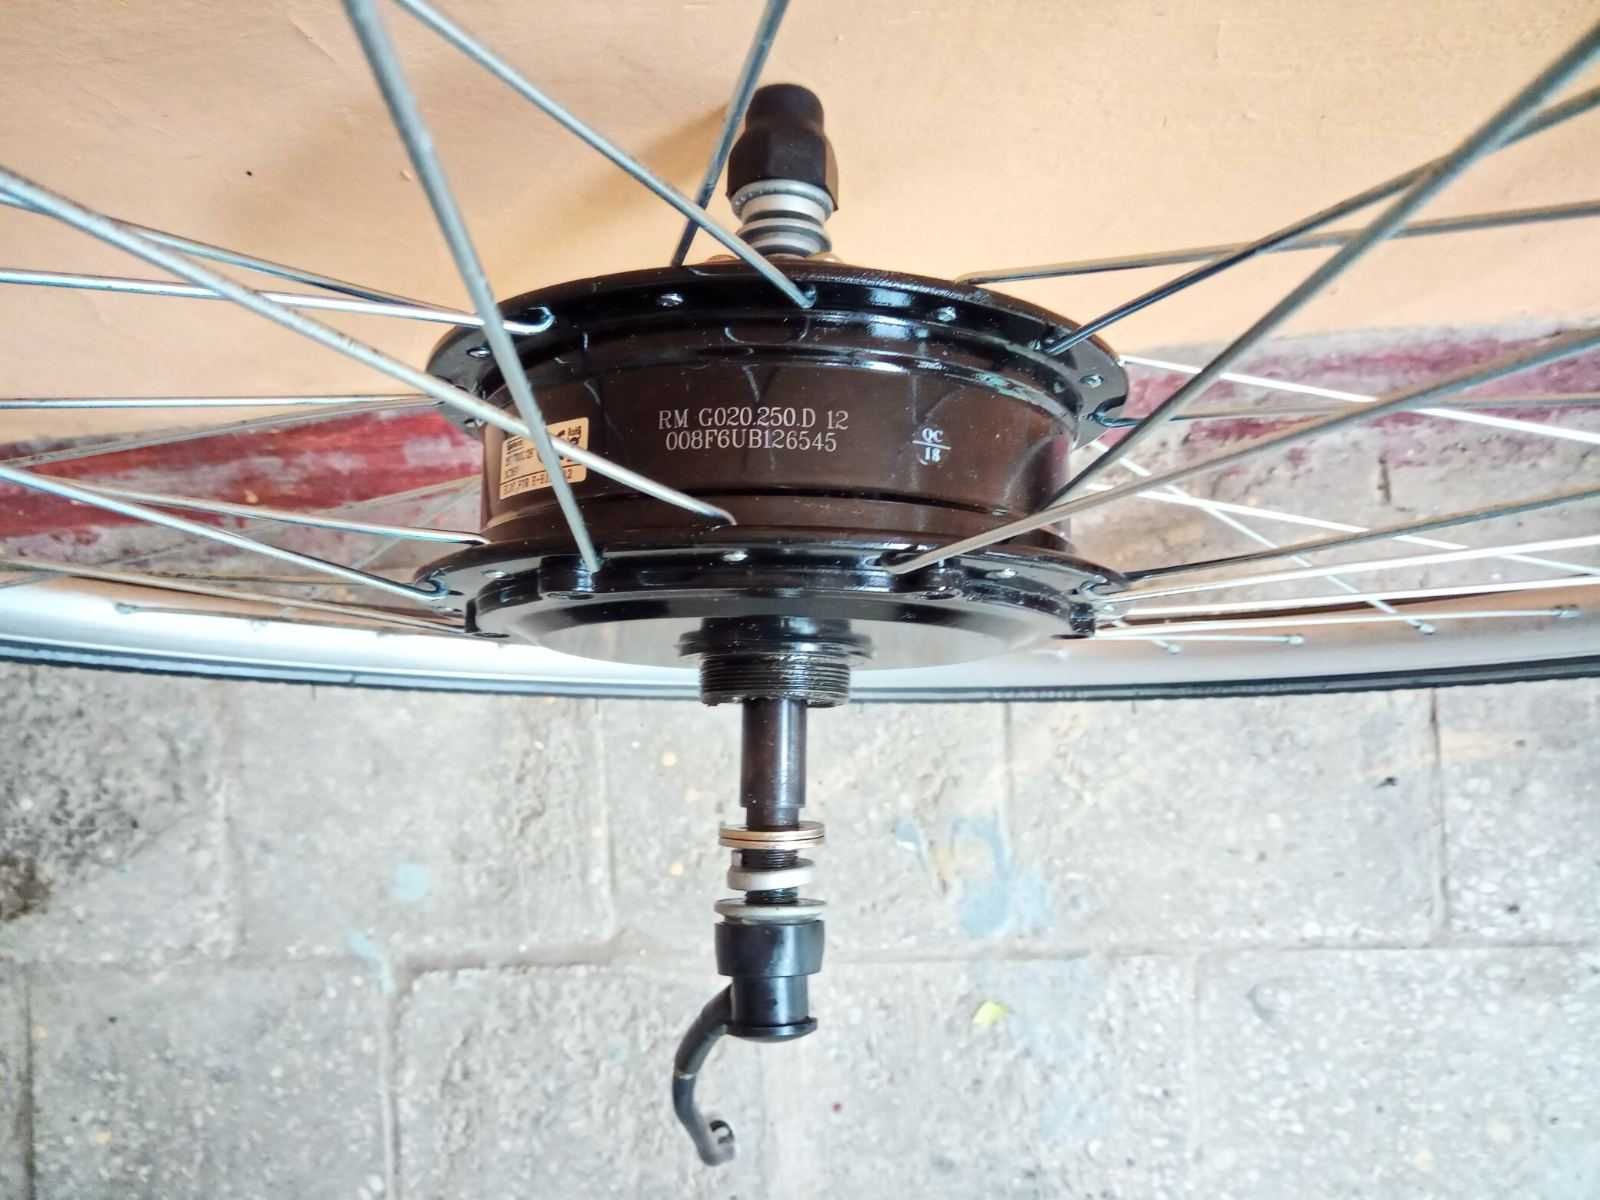 Мотор колесо Bafang 500 wt. Электро-велосипед електро-велосипед